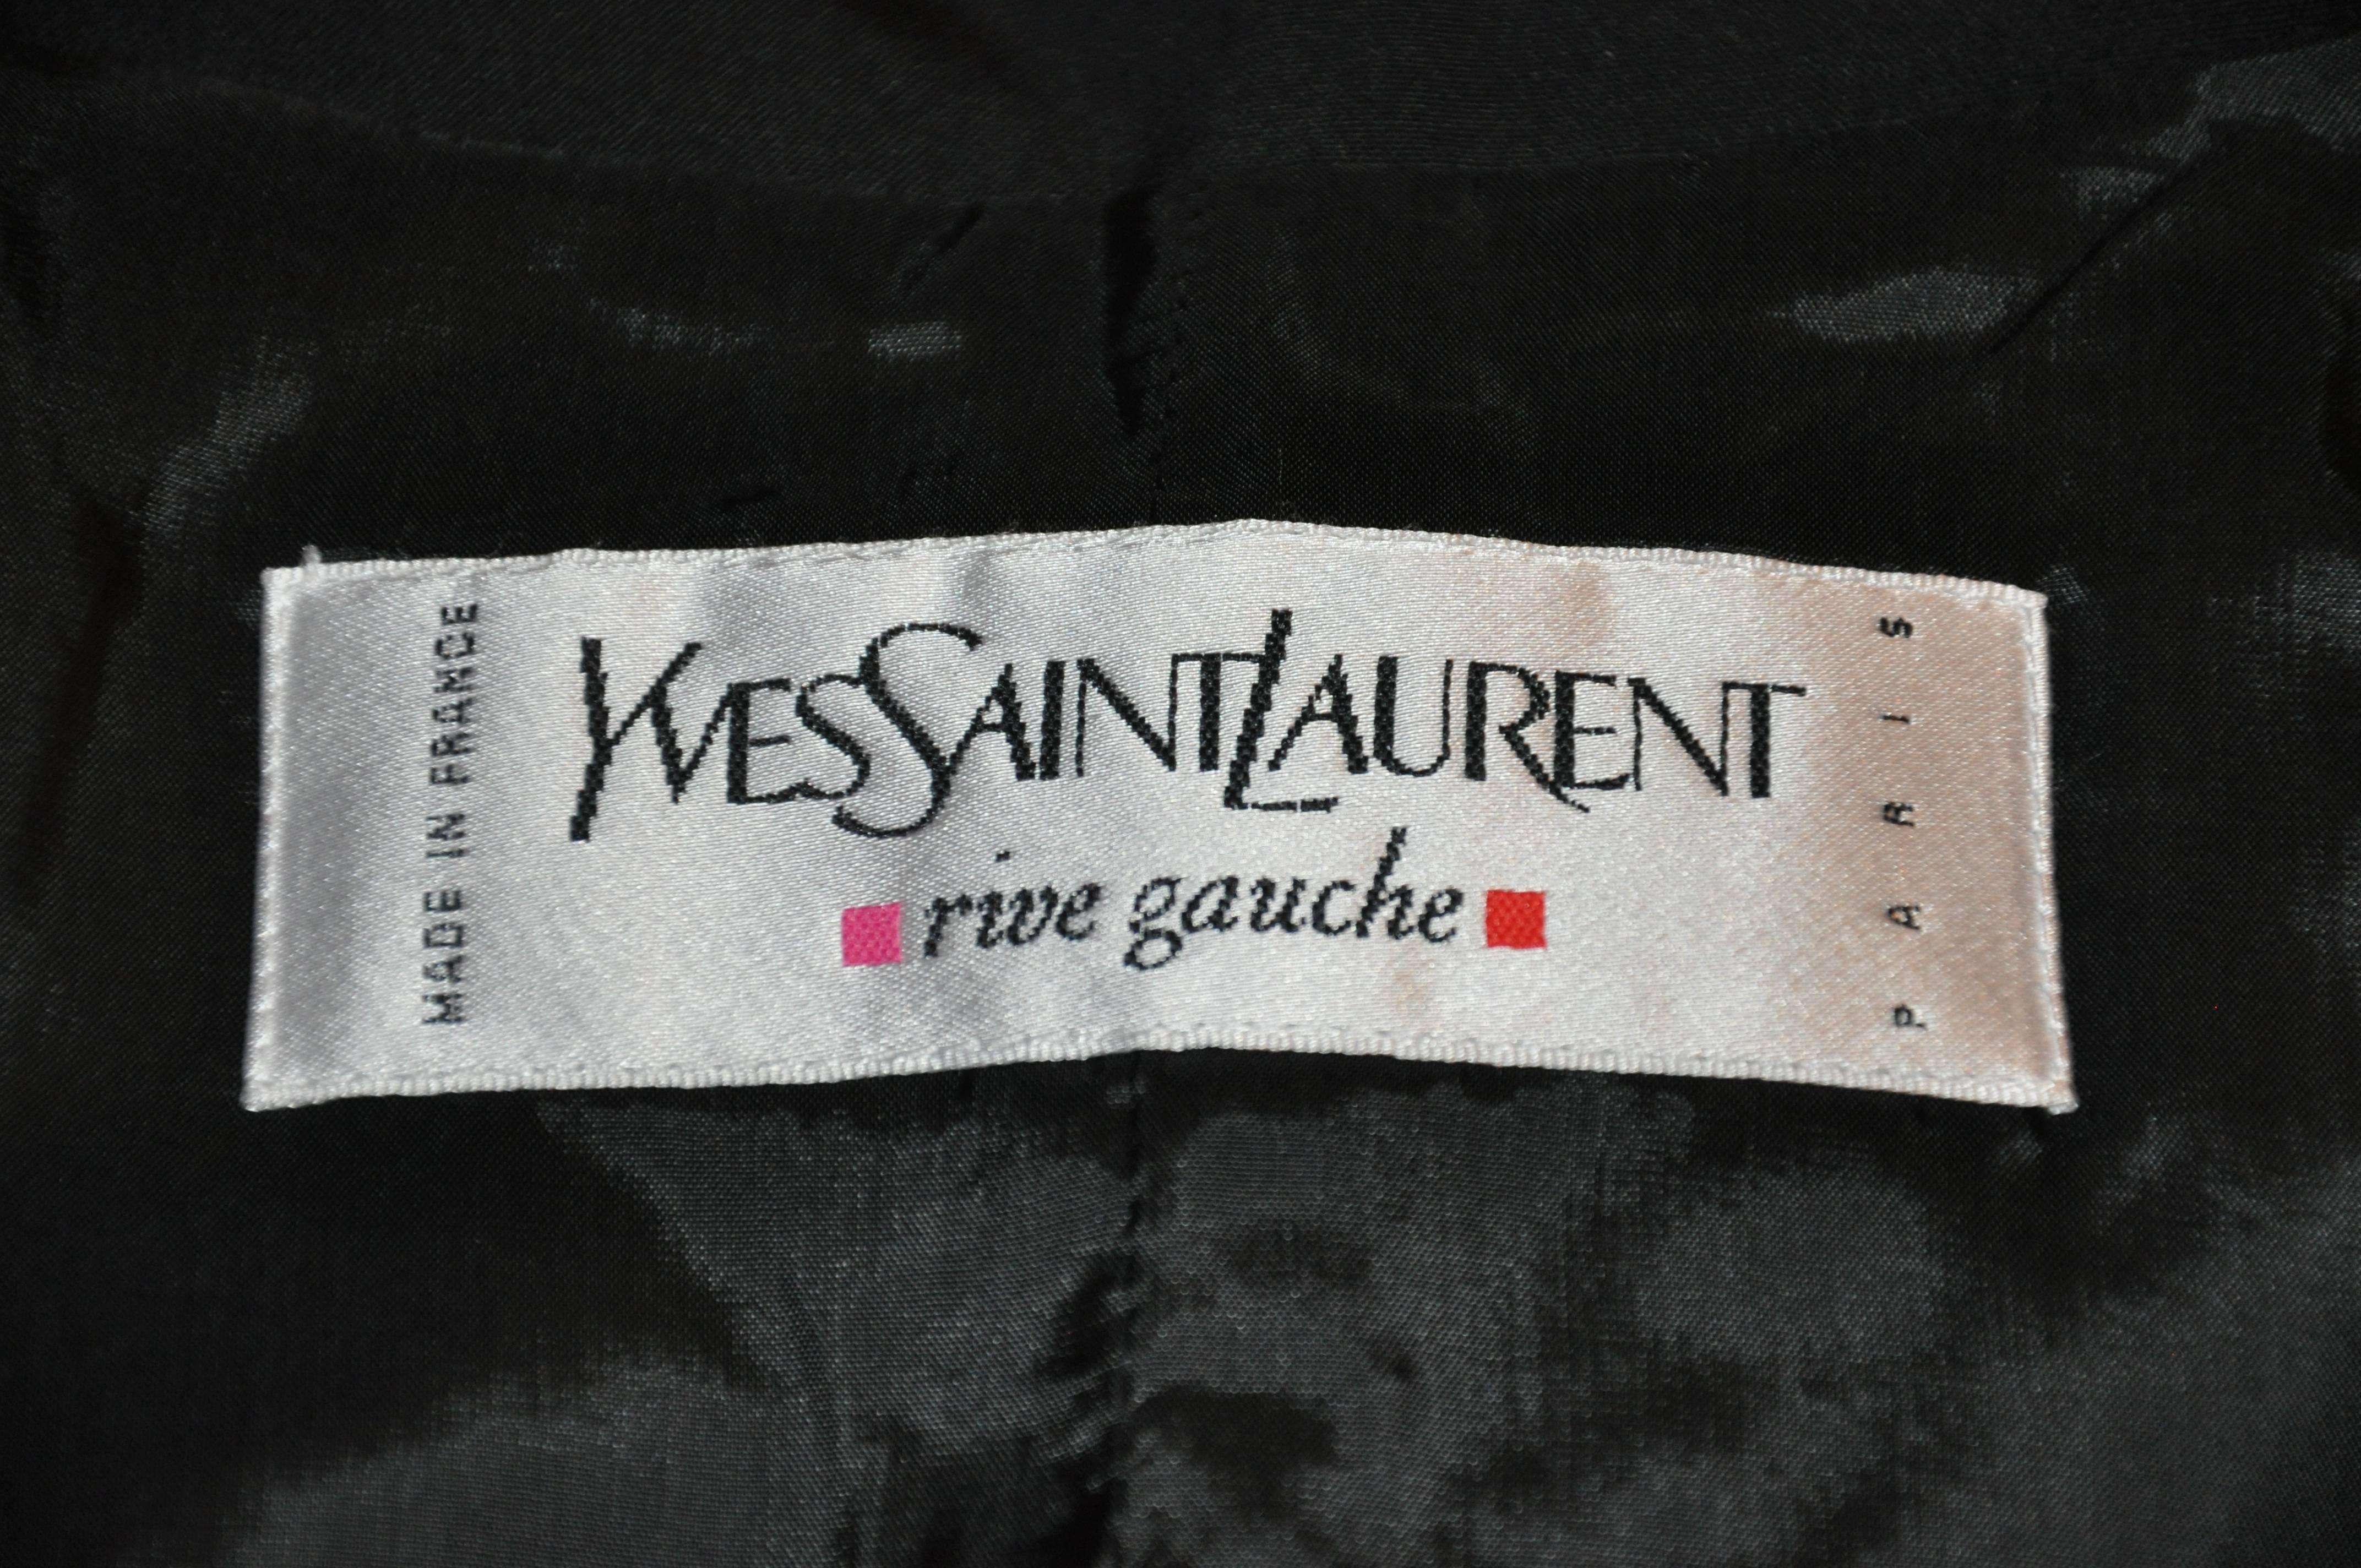 Yves Saint Laurent Signature 